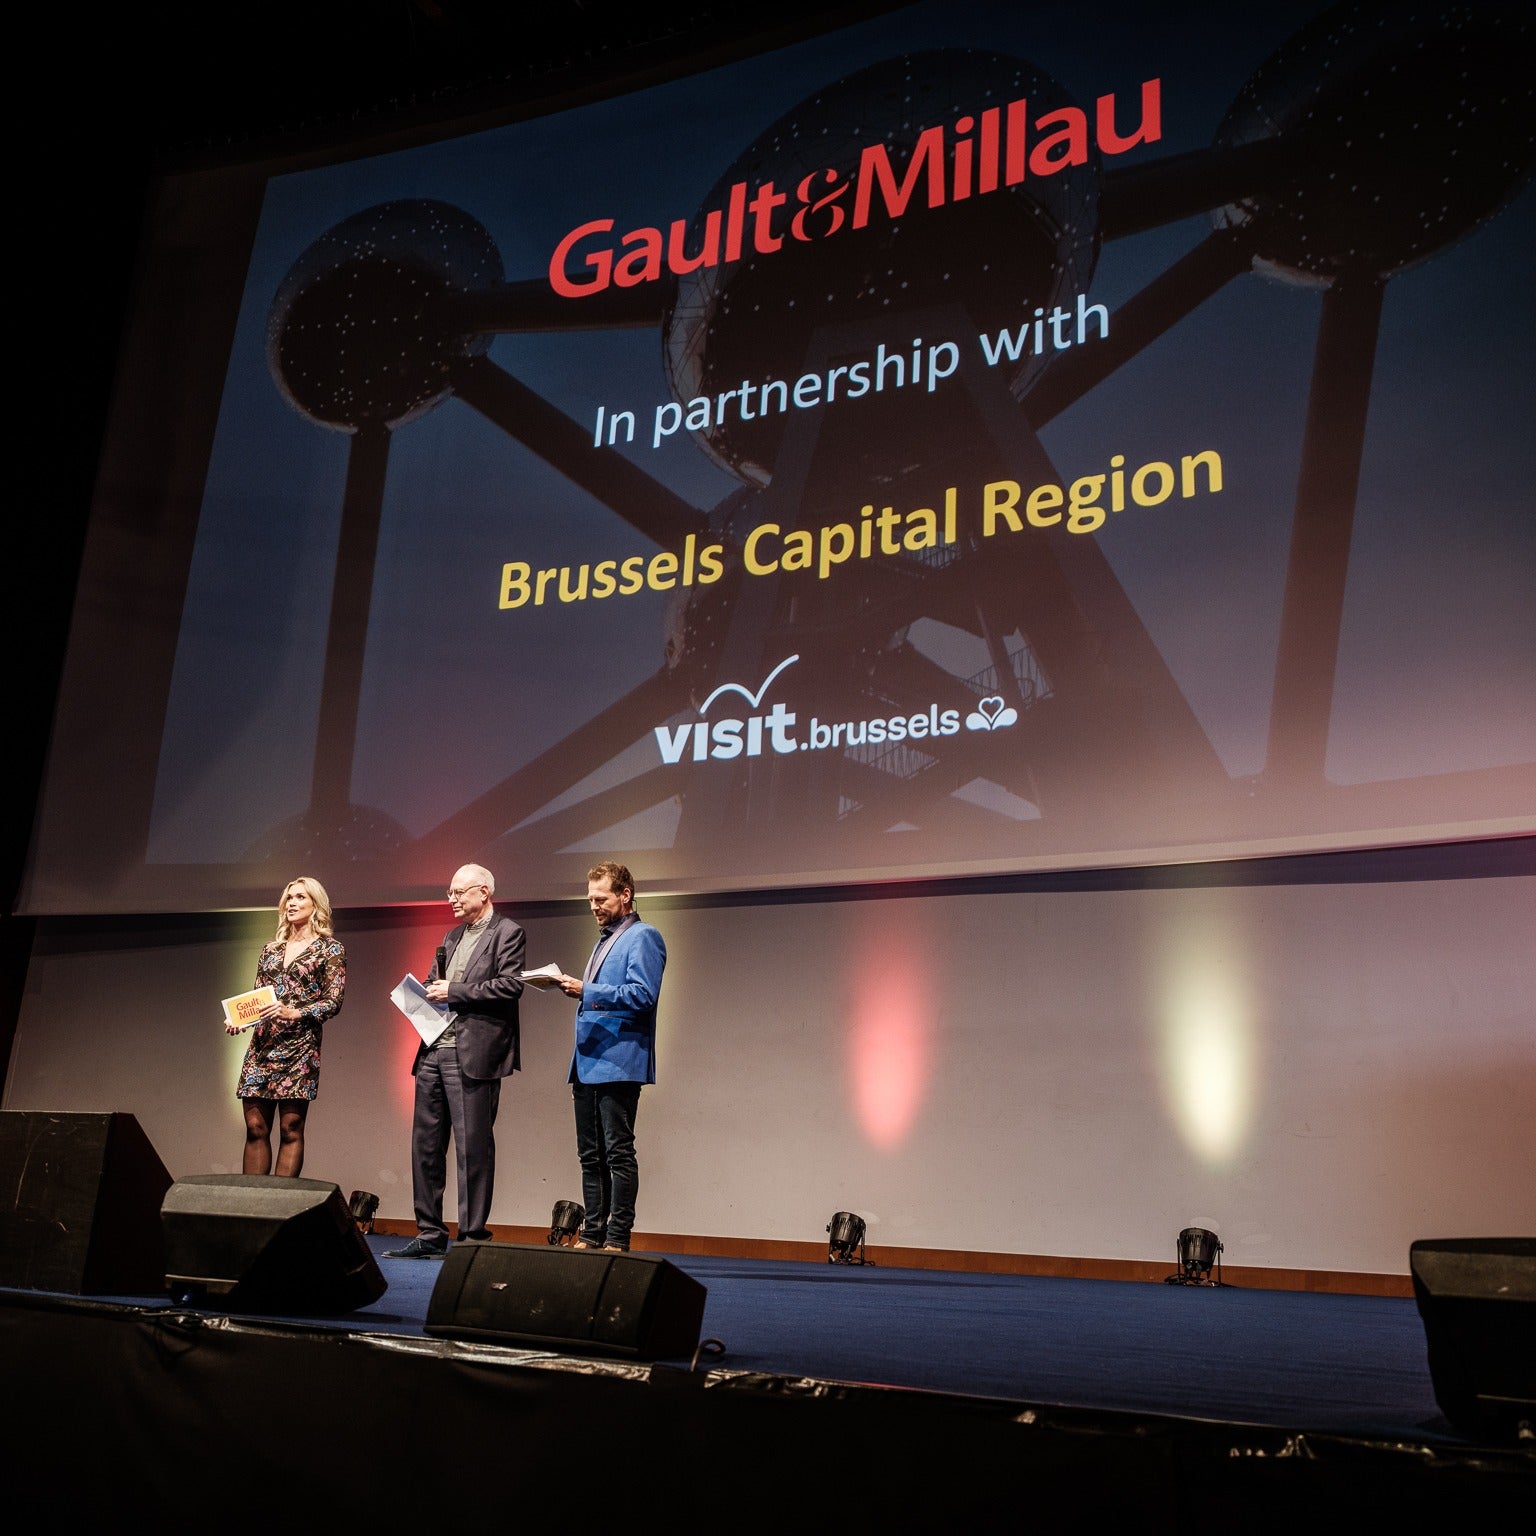 Botaniets & Havaniets, proud partners of Gault & Millau Benelux.